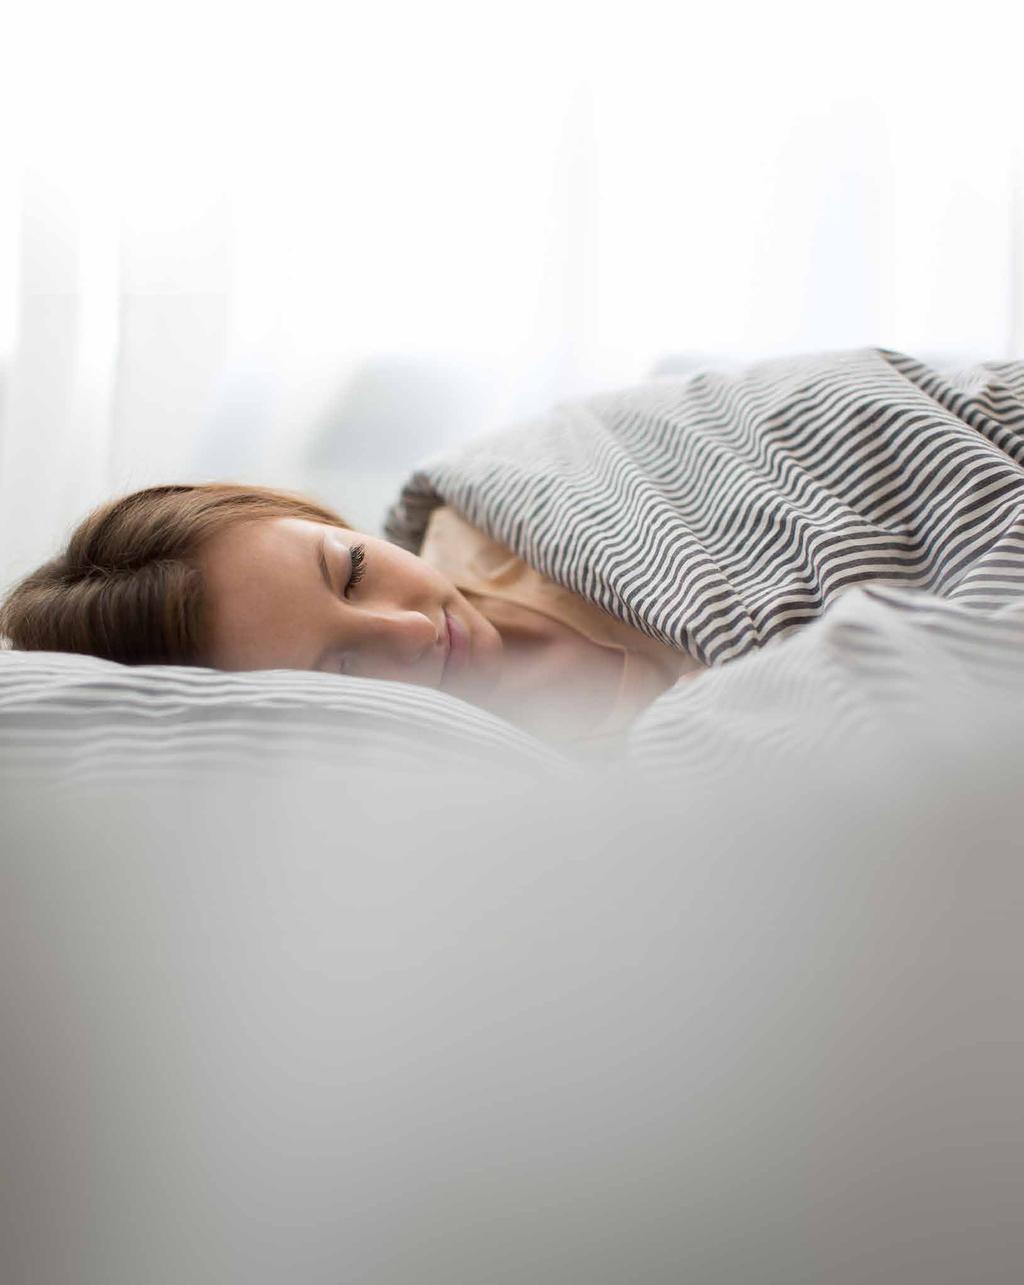 Finden Sie die perfekte Zudecke für Ihre Schlafgewohnheiten Zudecken für den individuellen Wärmebedarf!